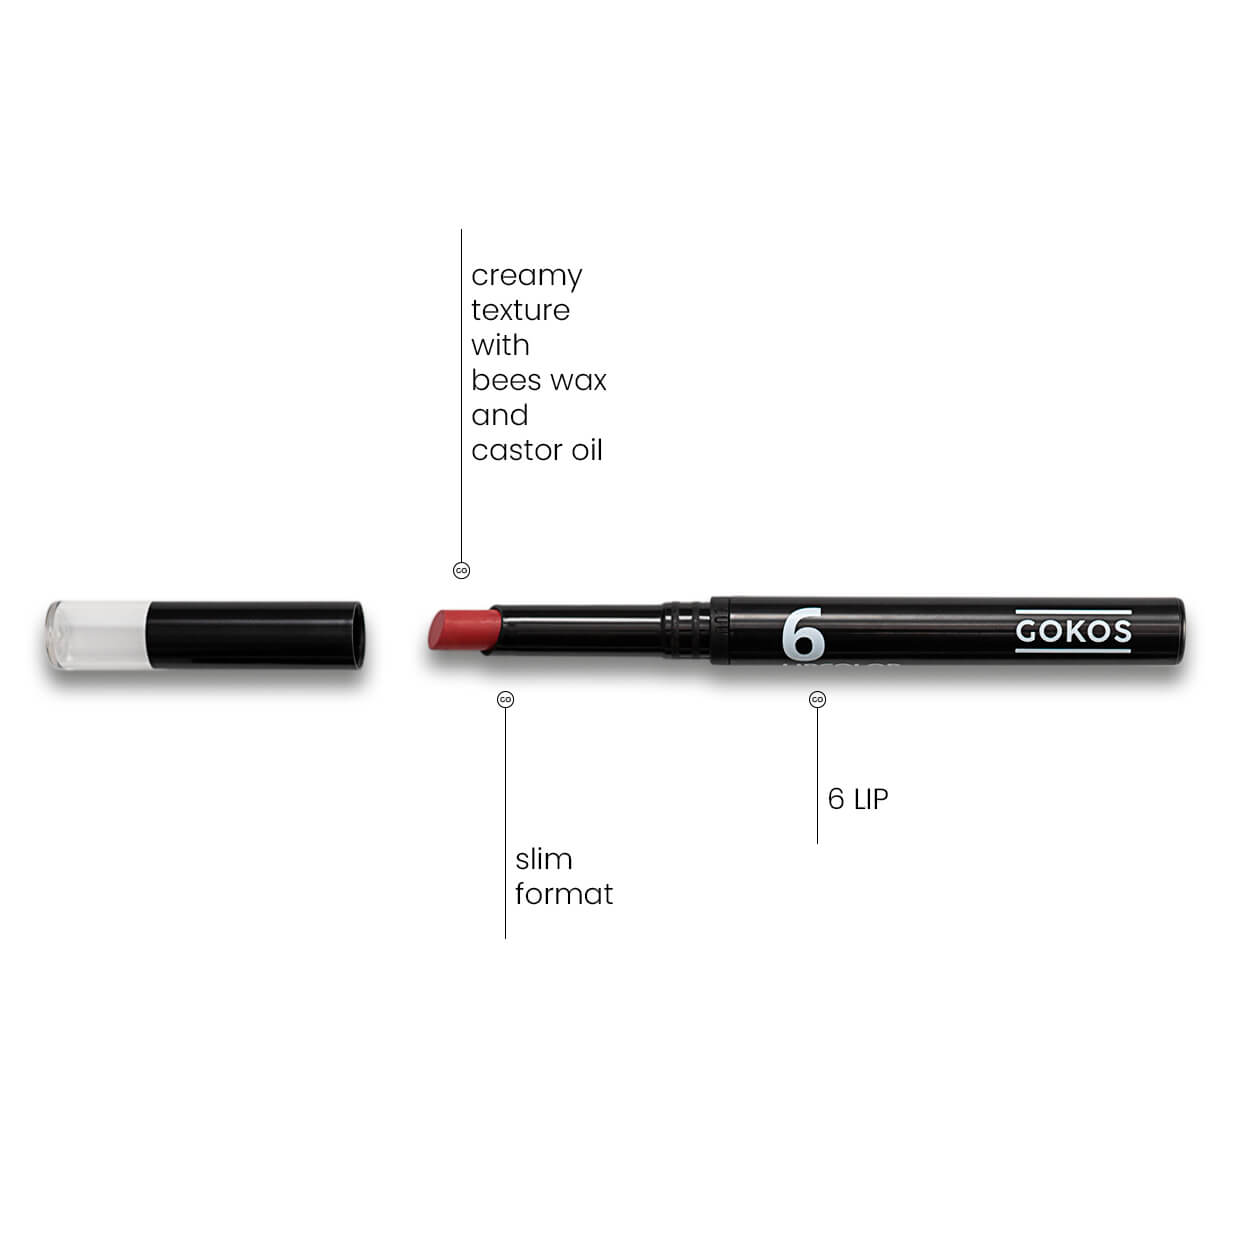 GOKOS - Beauty to go - Indie-Makeup-Brand mit Stiften 85